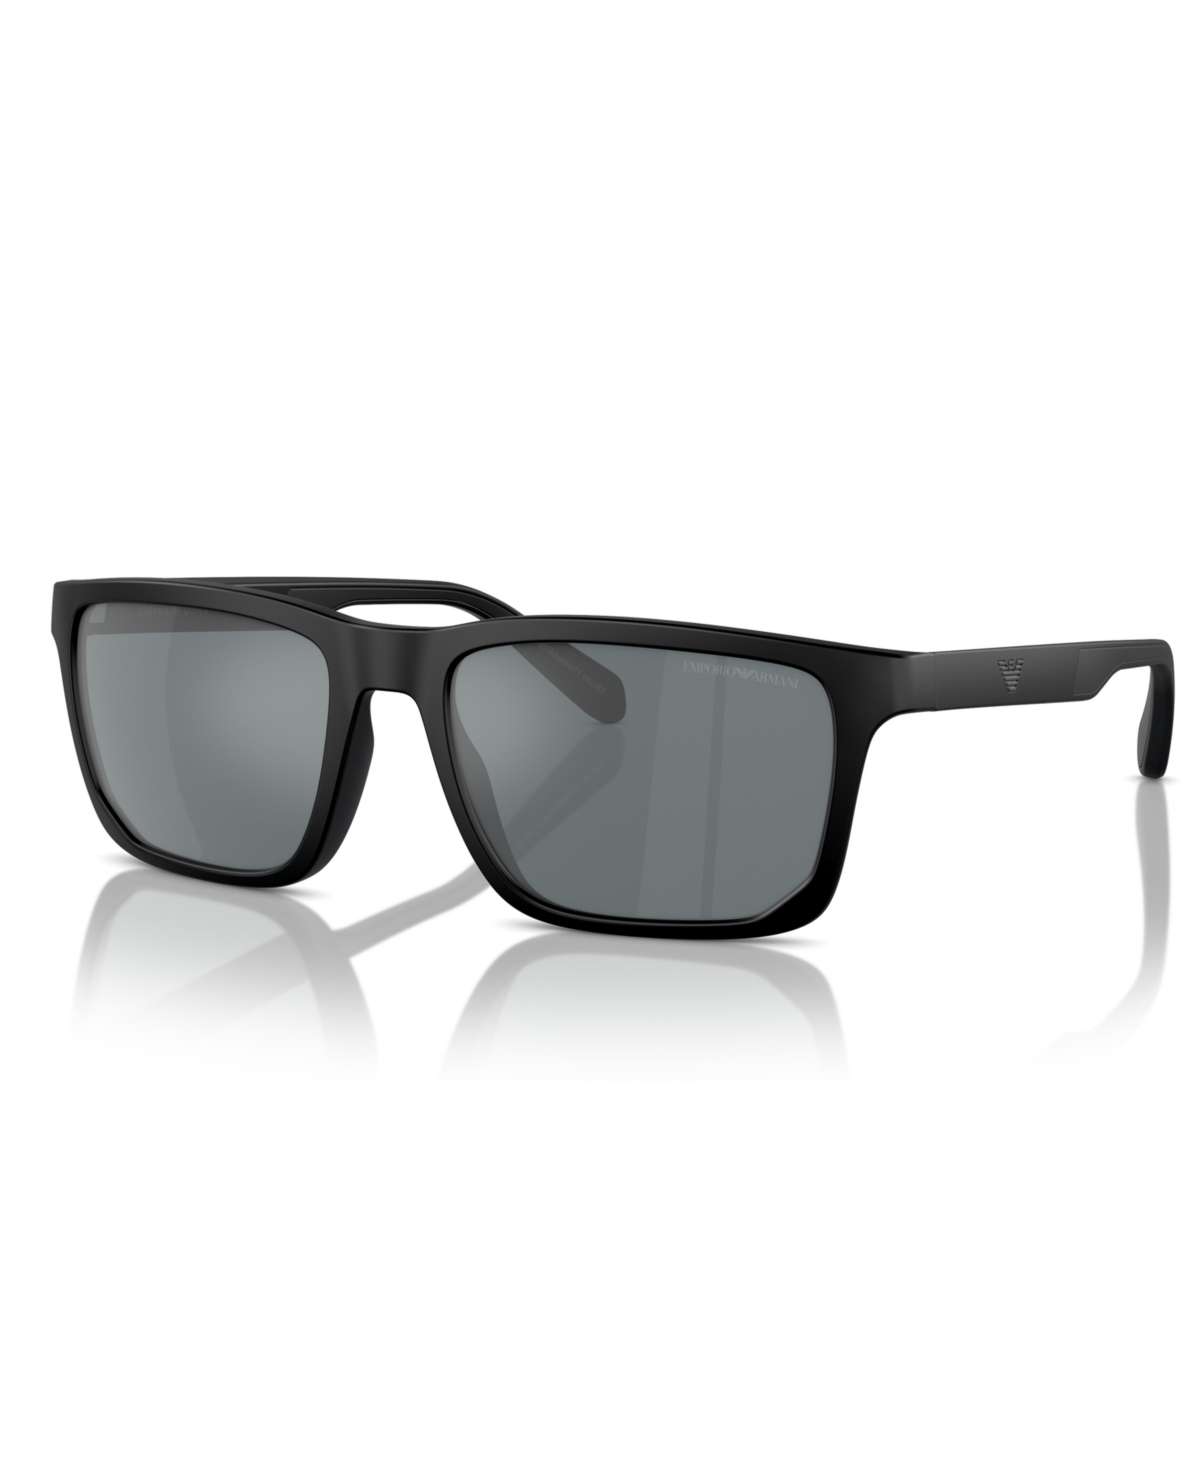 Emporio Armani Men's Sunglasses, Ea4219 In Matte Black